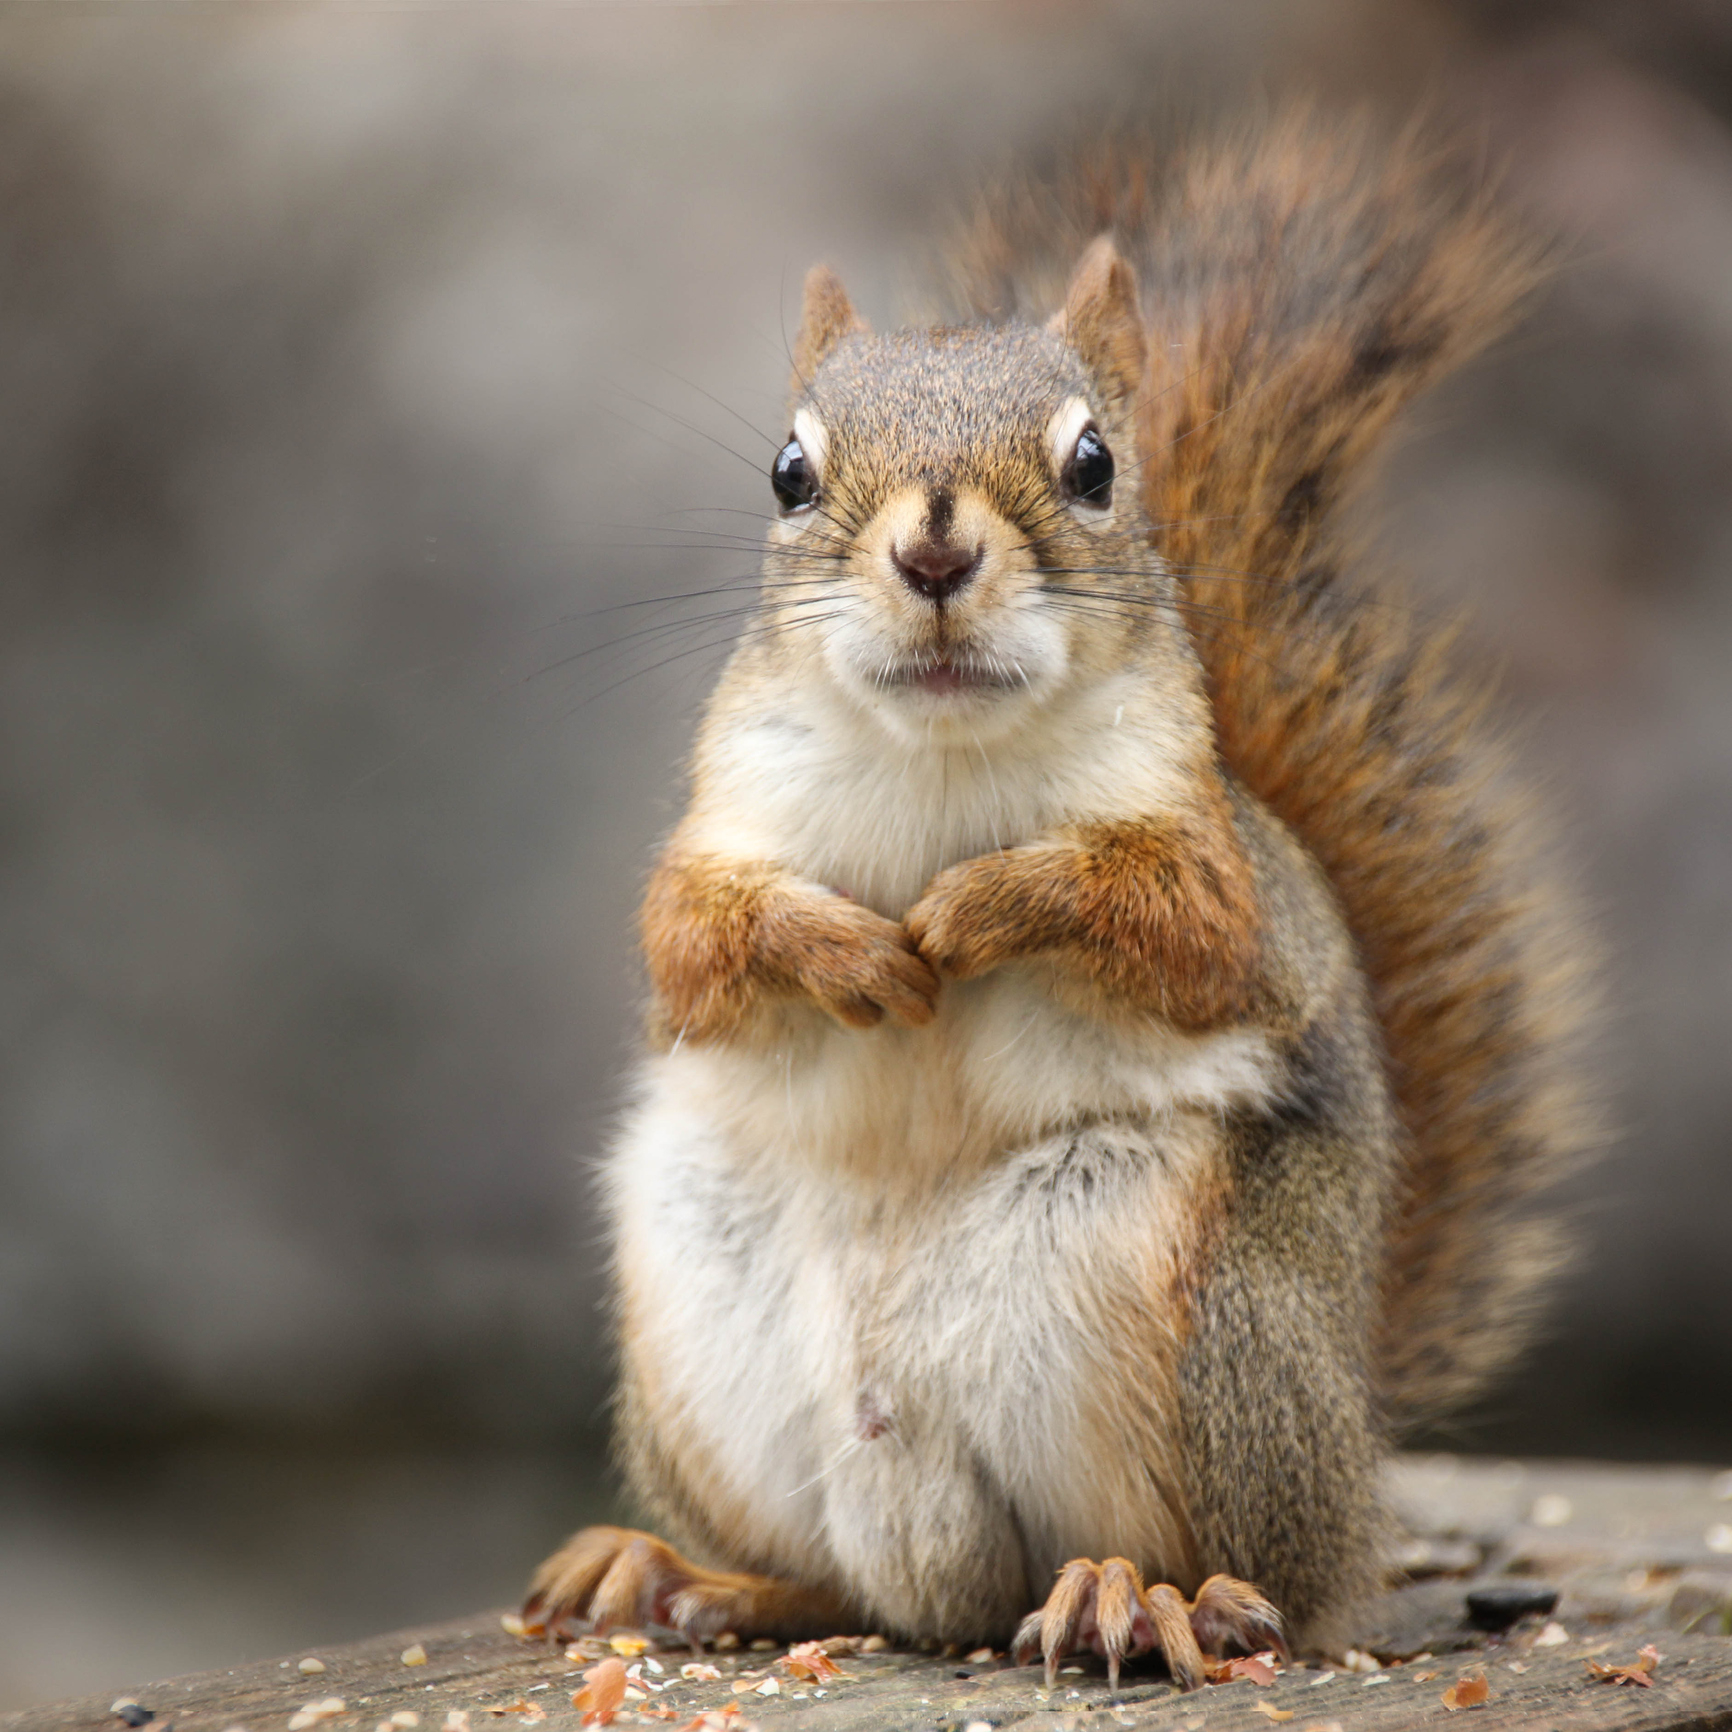 Closeup of a squirrel